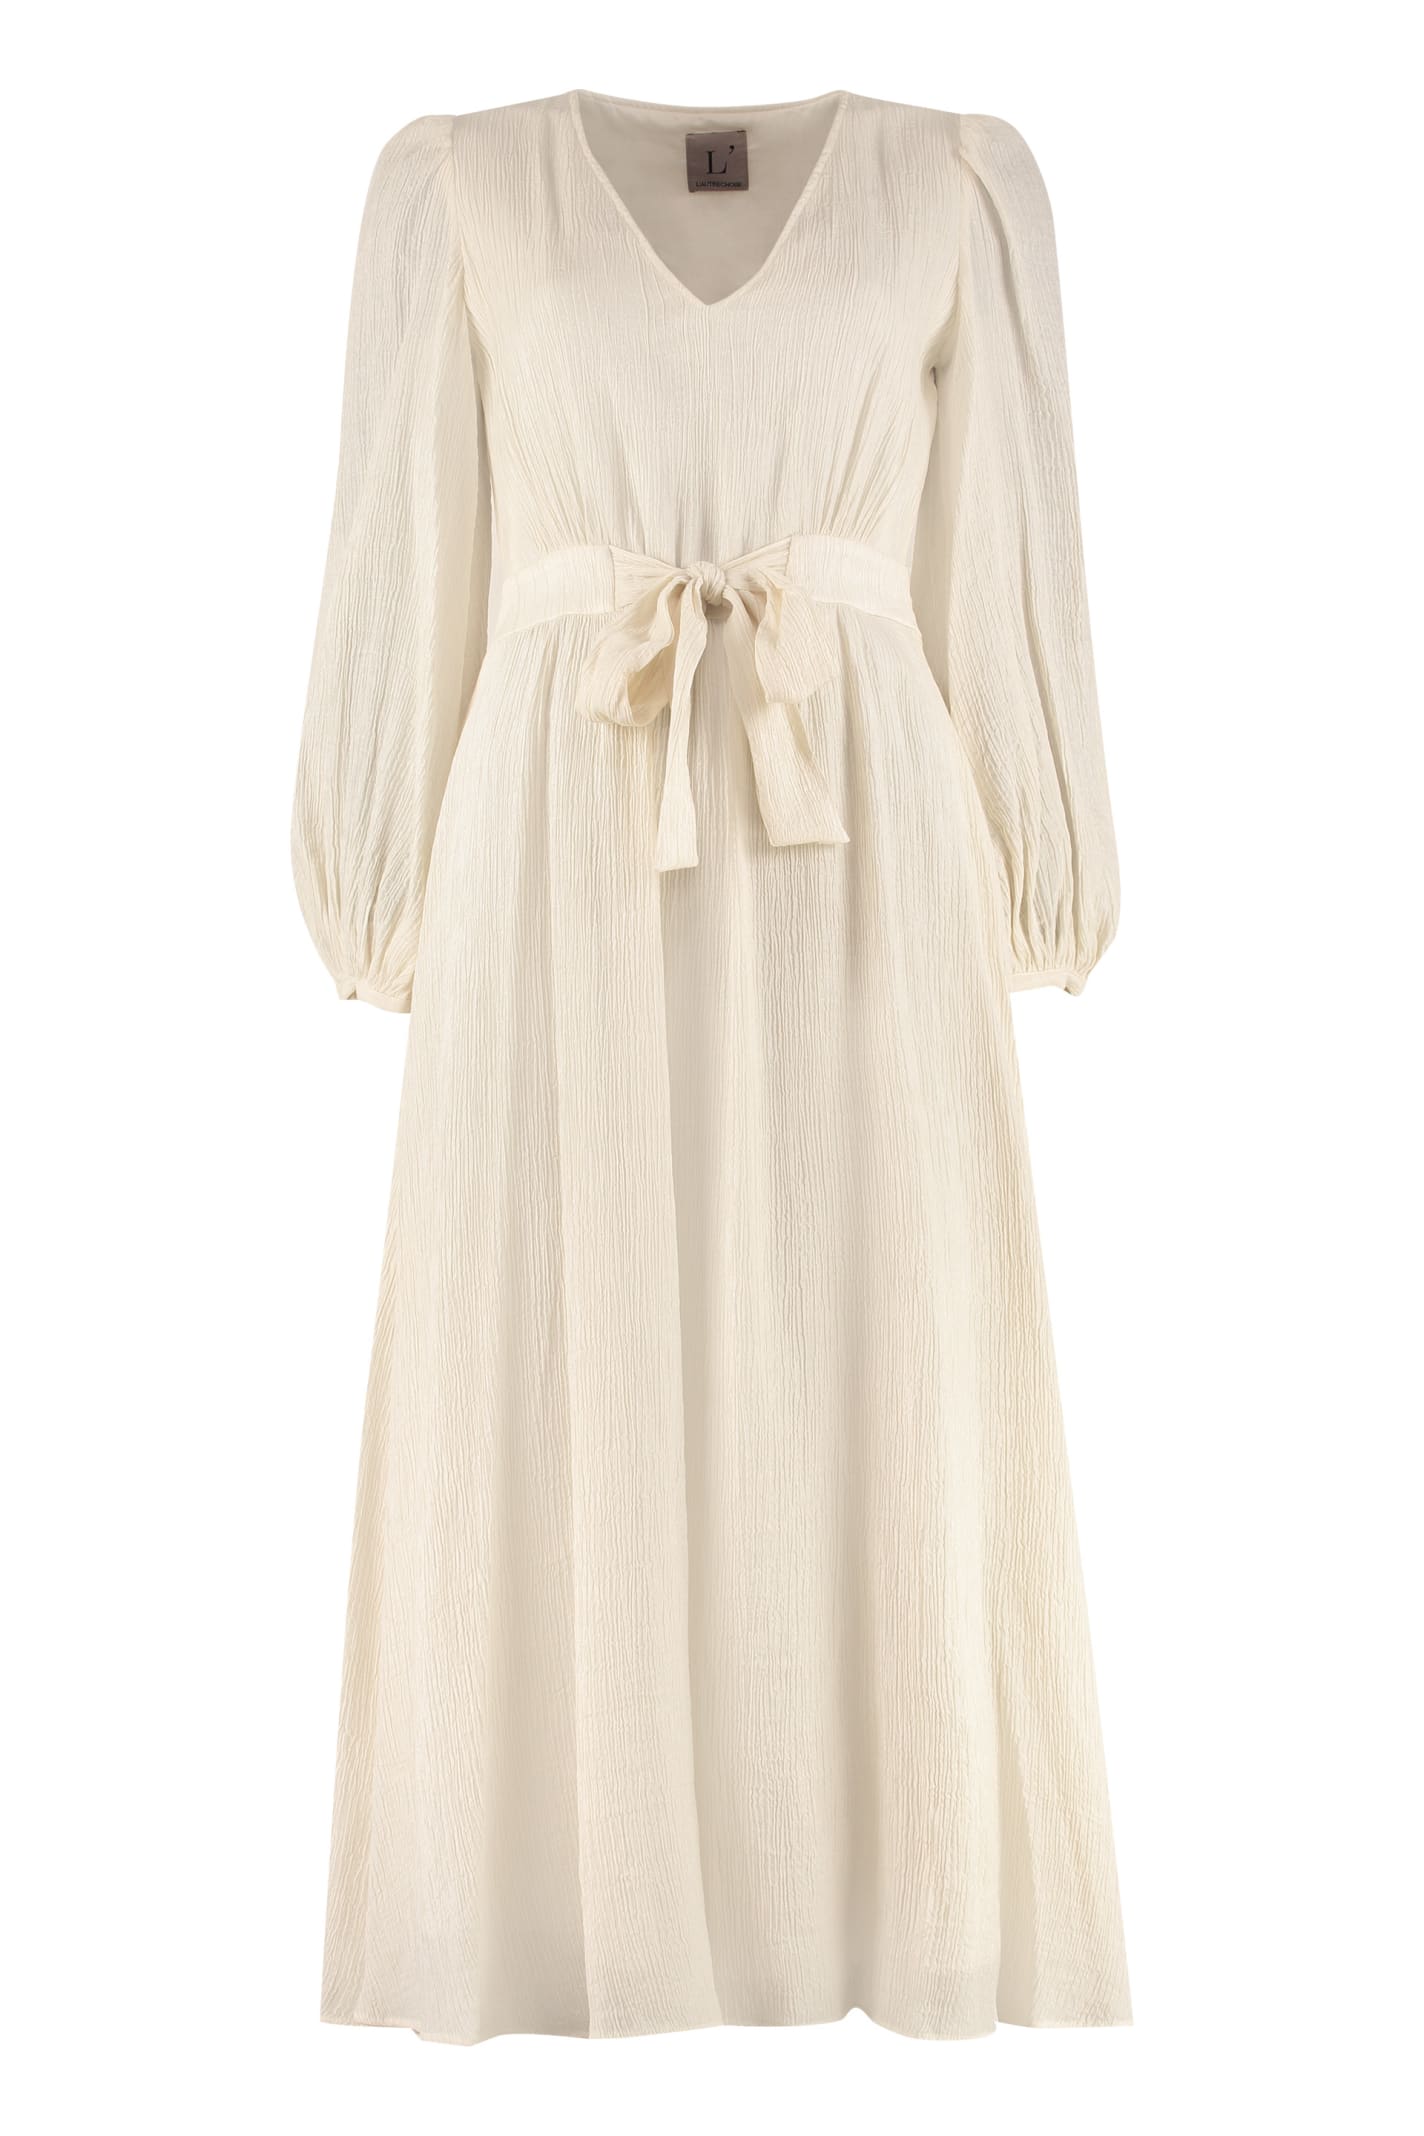 L'autre Chose Sash Waist Dress In Ivory